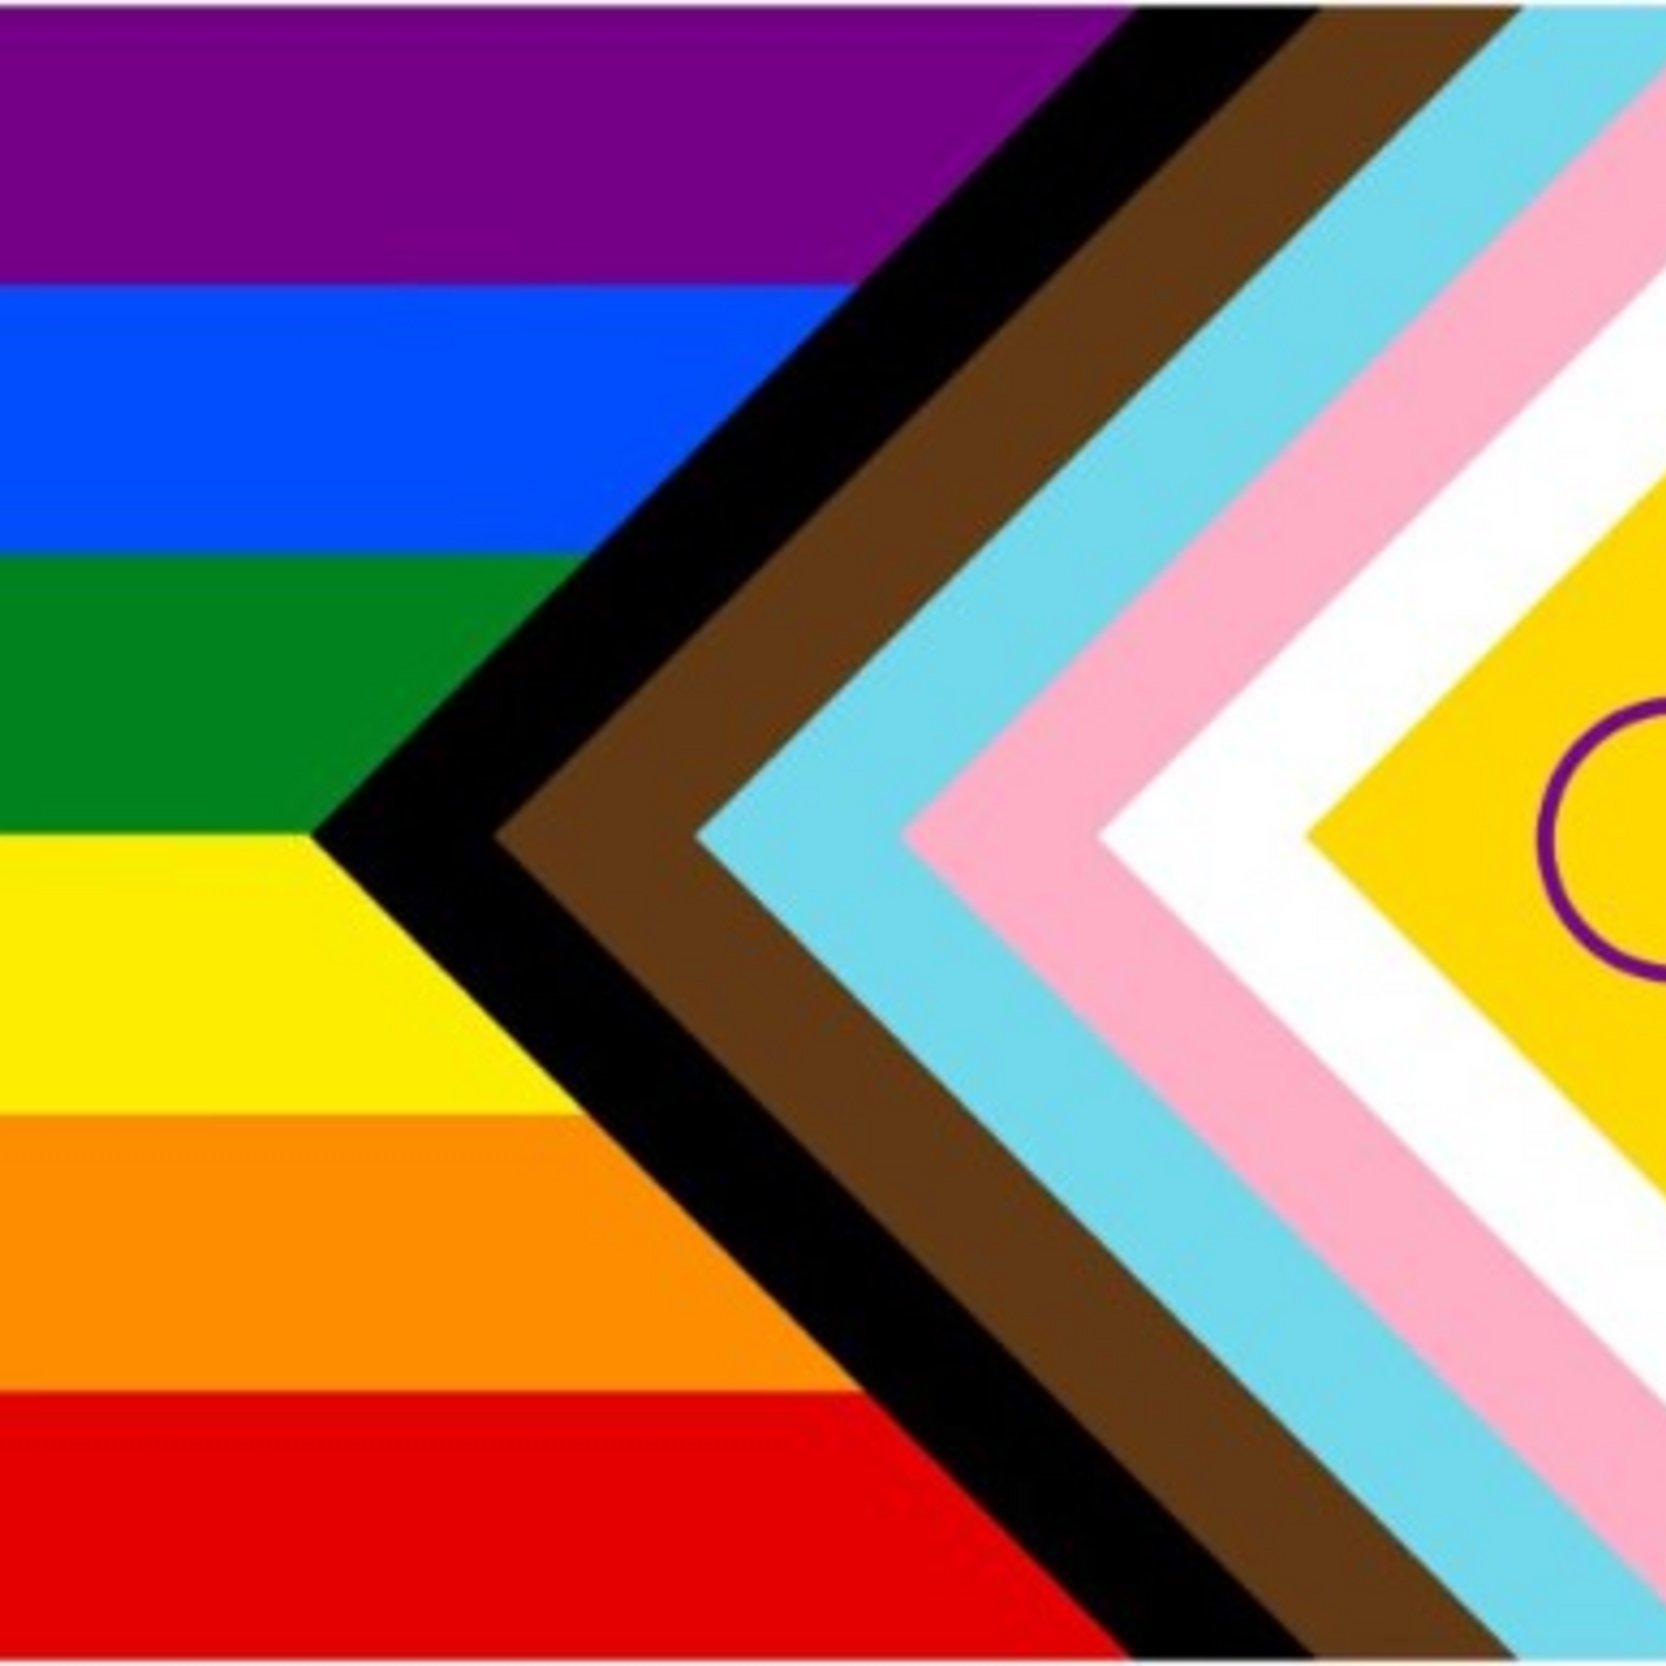 Die LGBT*IQ Fahne hat viel bunte Farben und den Text: Gott liebt queer.